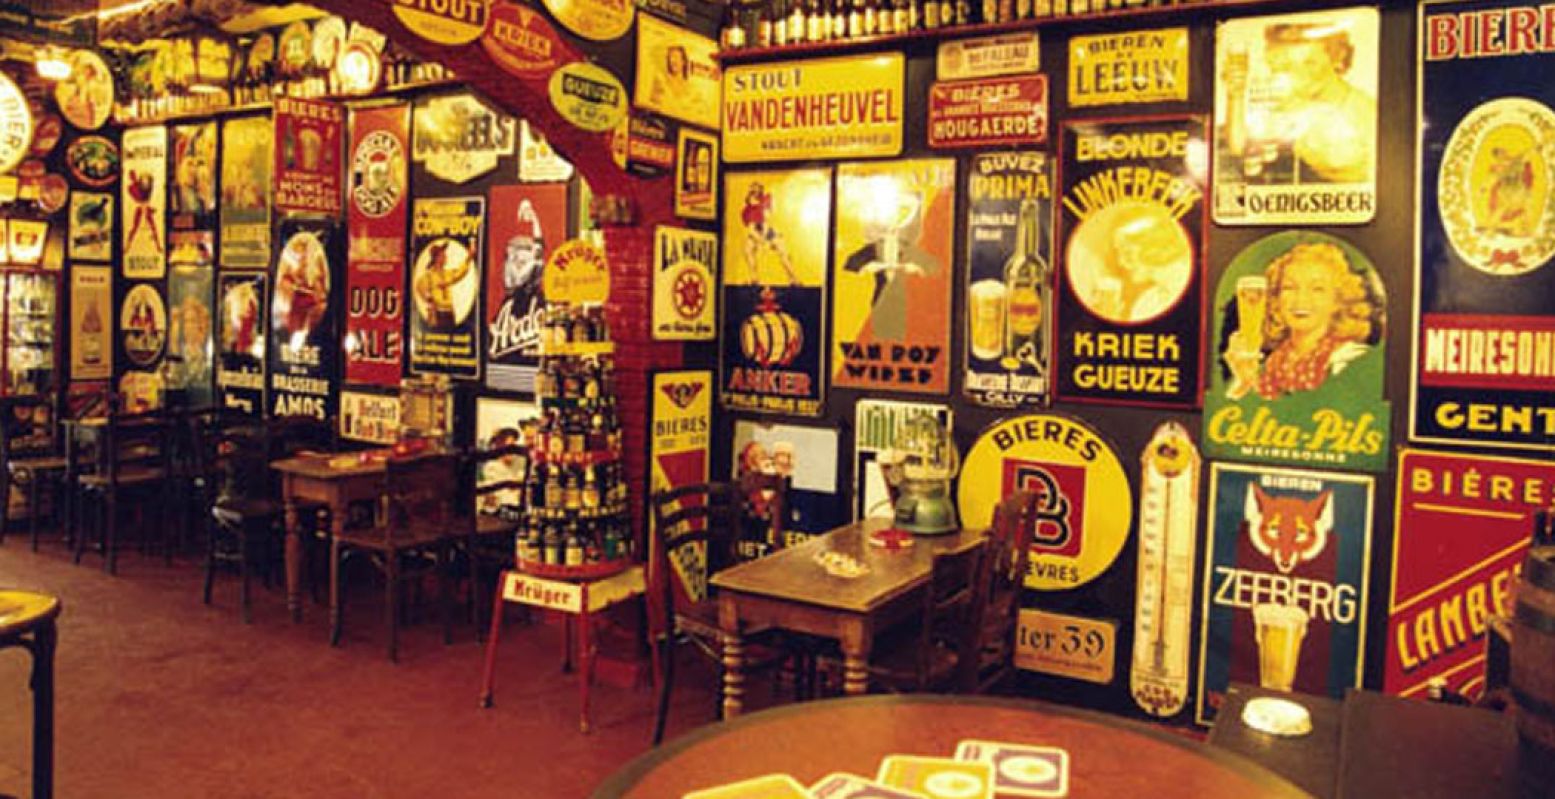 Reclameborden, oude bierviltjes en een heuse bar, je vindt het allemaal in het Bierreclame Museum in Breda. Foto: M.J. Hertman